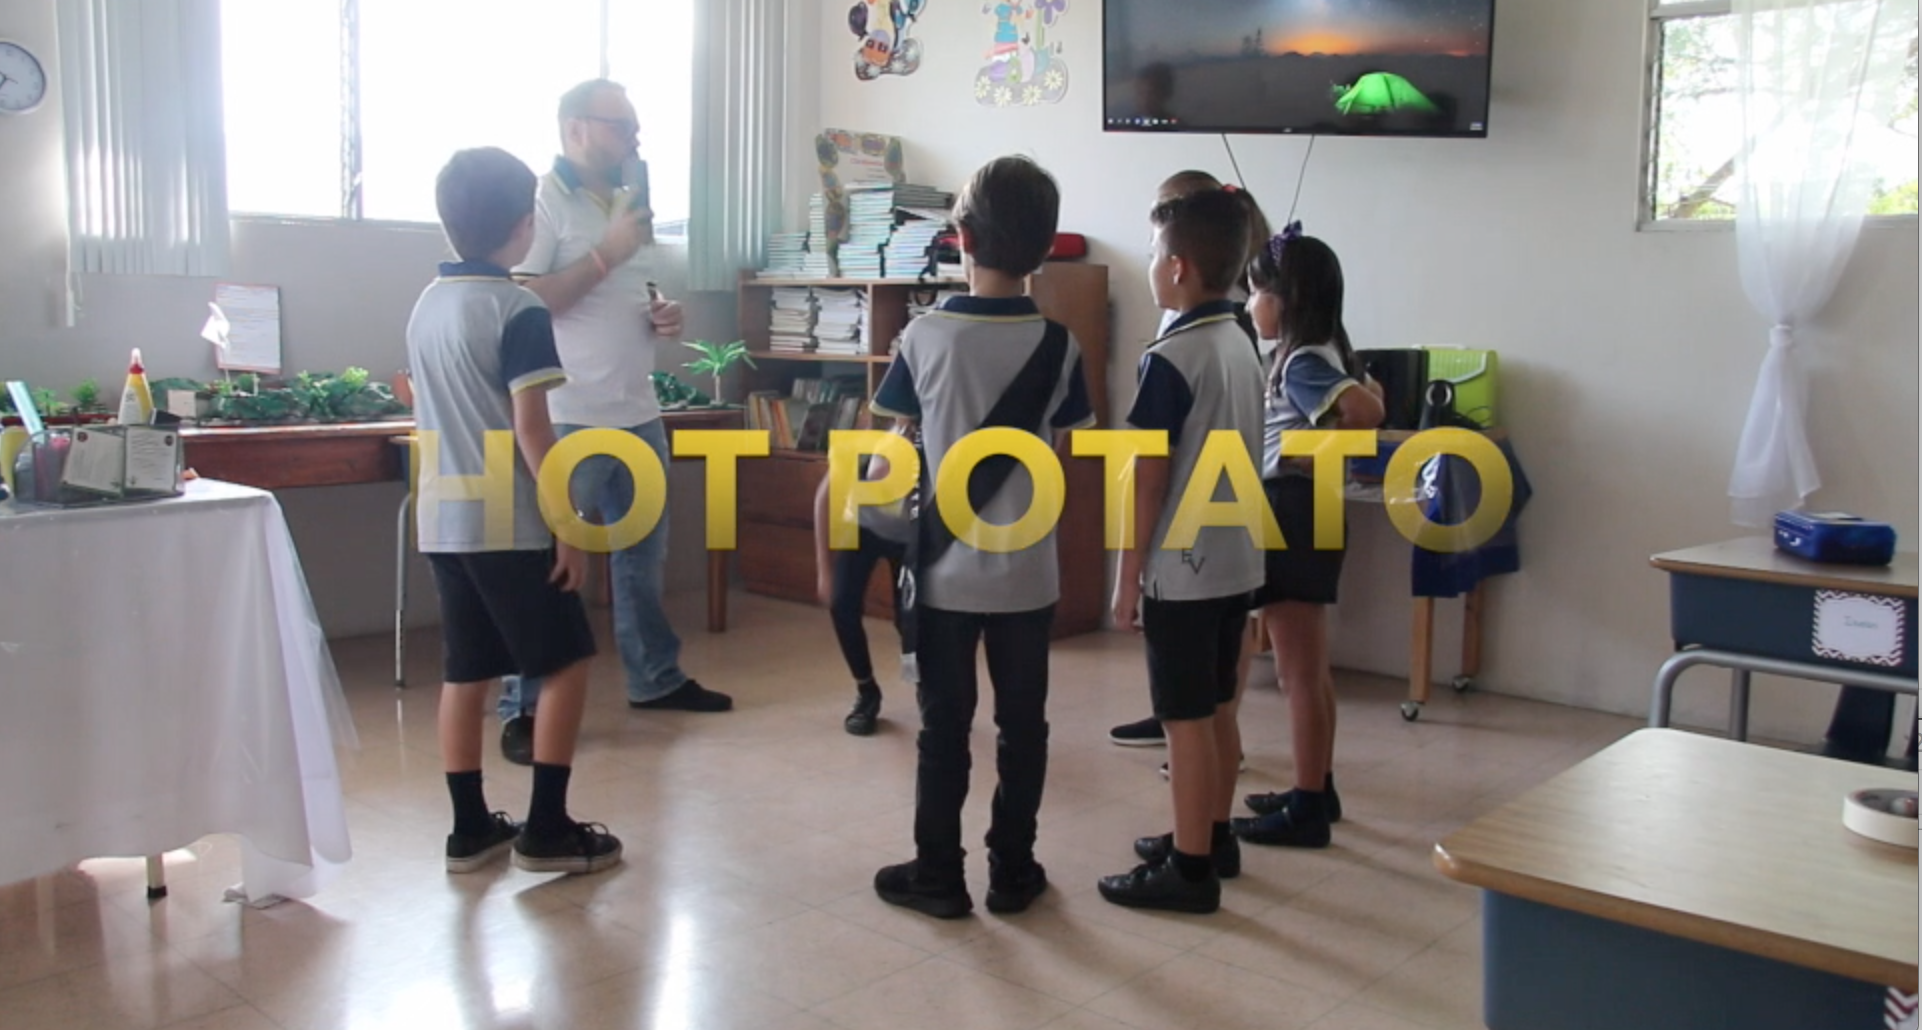 Playing Hot Potato